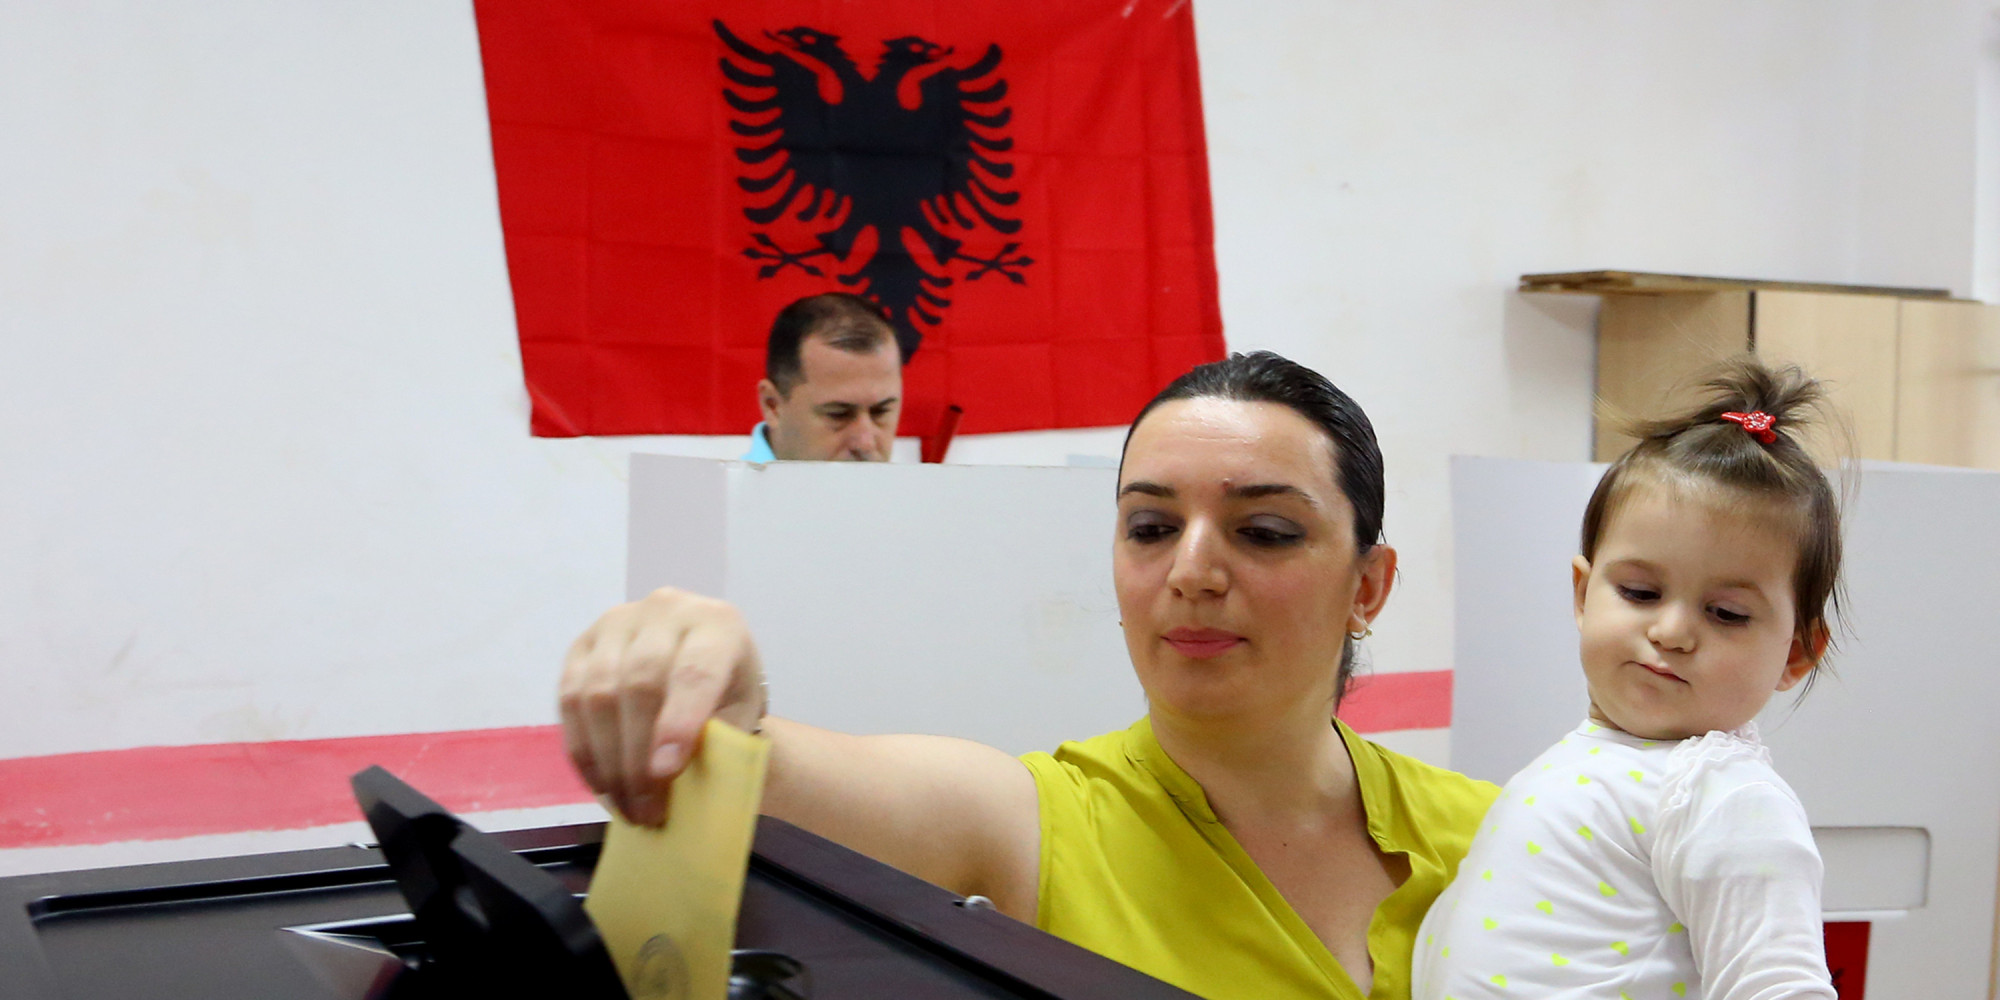 Κάλπες στην Αλβανία: Ξεκάθαρο προβάδισμα του Σοσιαλιστικού κόμματος με 51%